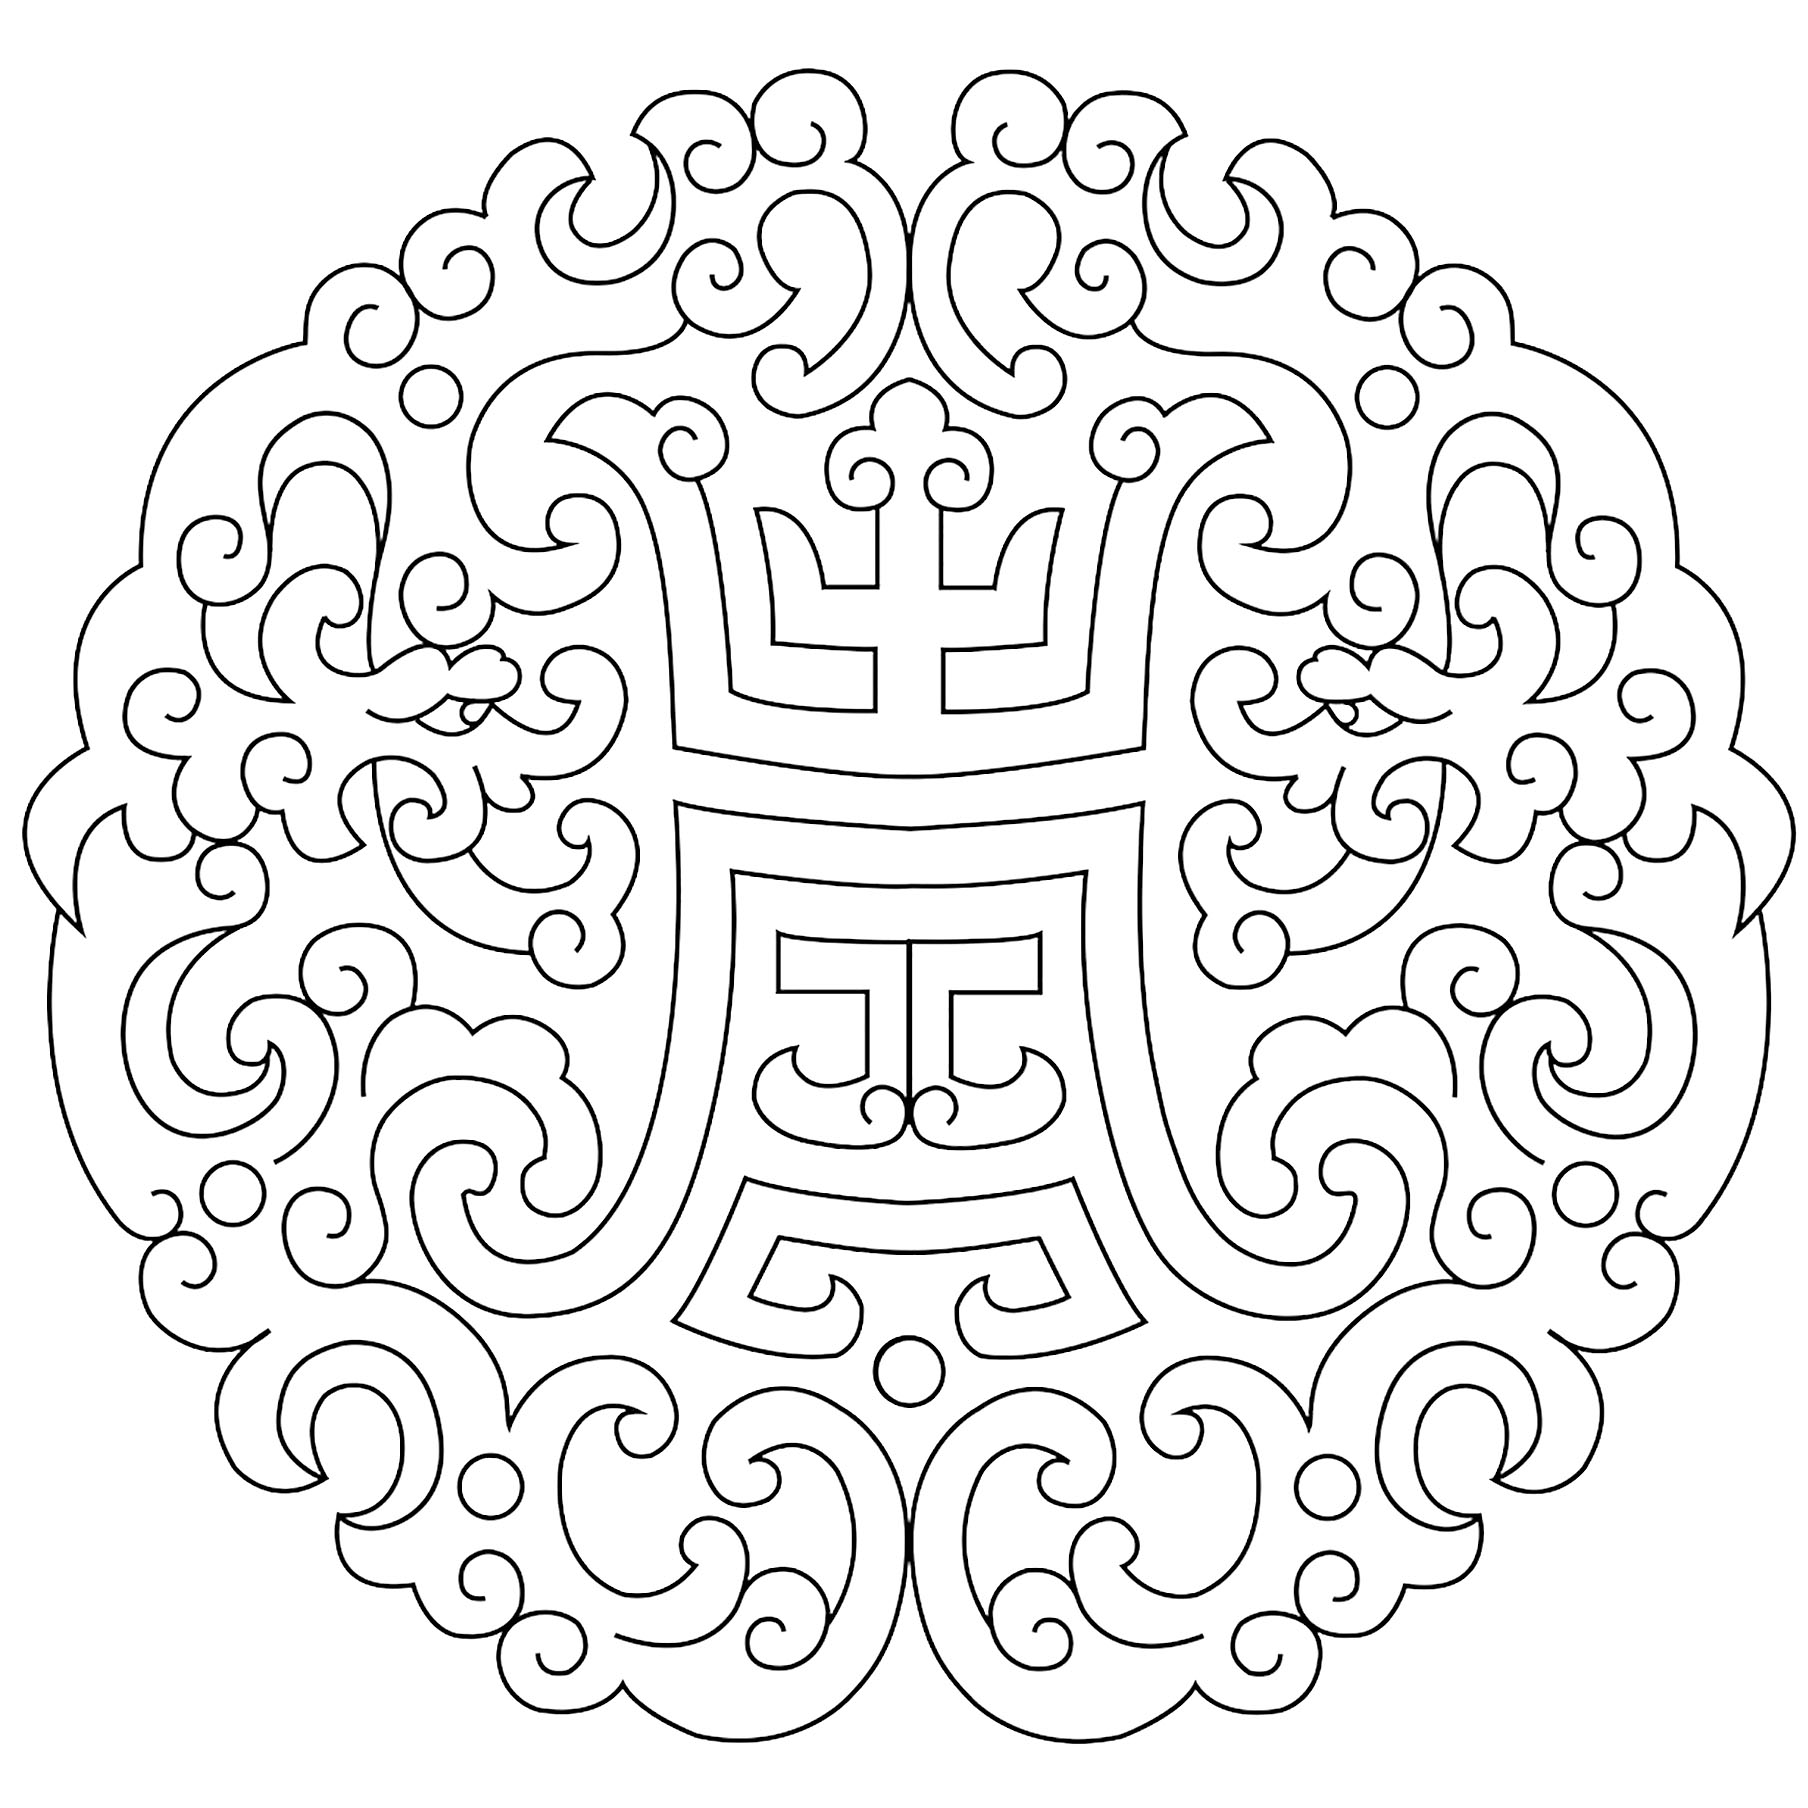 Mandala original inspirada em padrões tradicionais